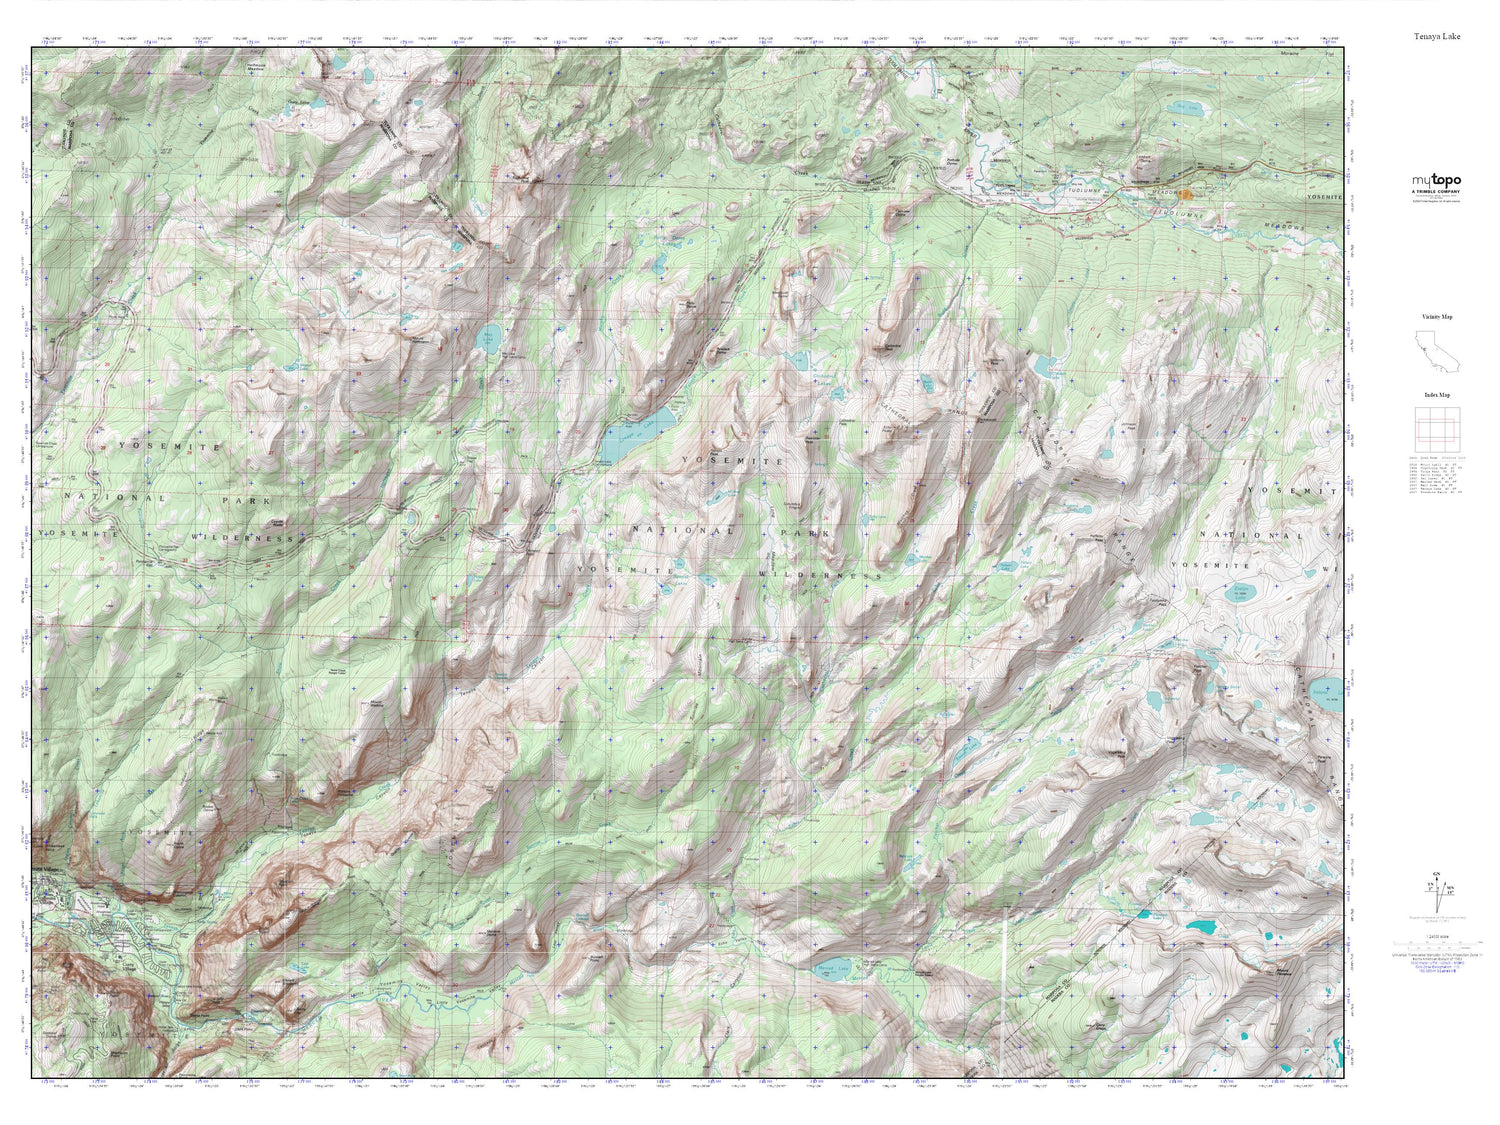 Teneya Lake MyTopo Explorer Series Map Image